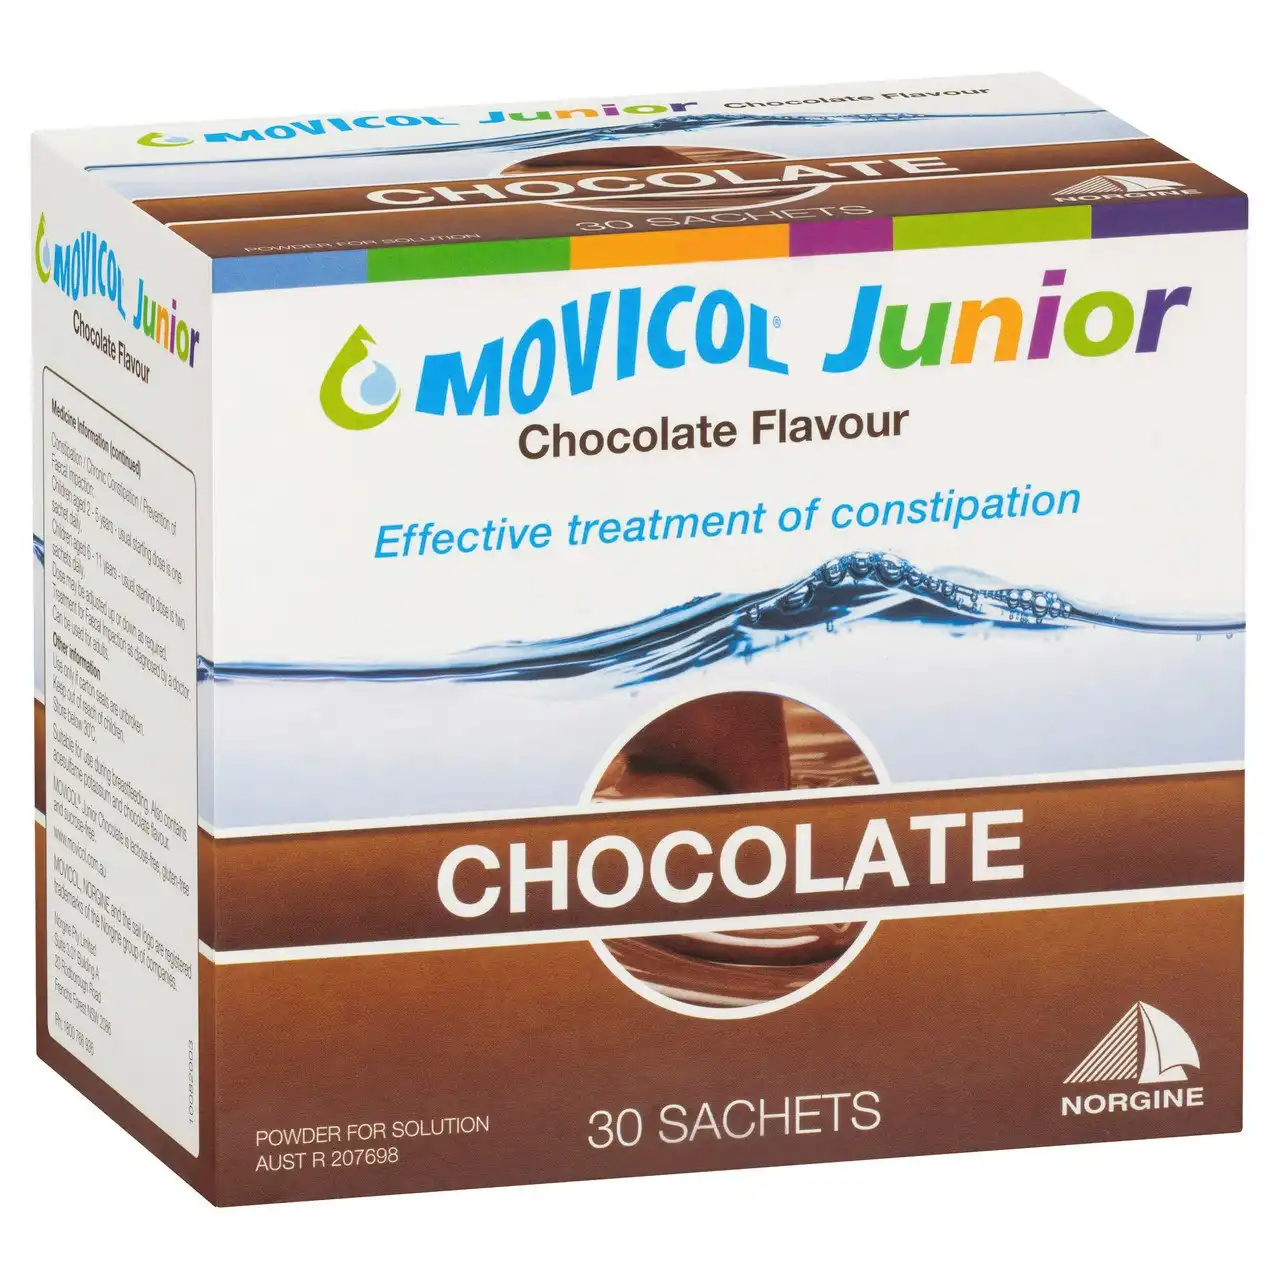 MOVICOL(r) Junior Chocolate Flavour